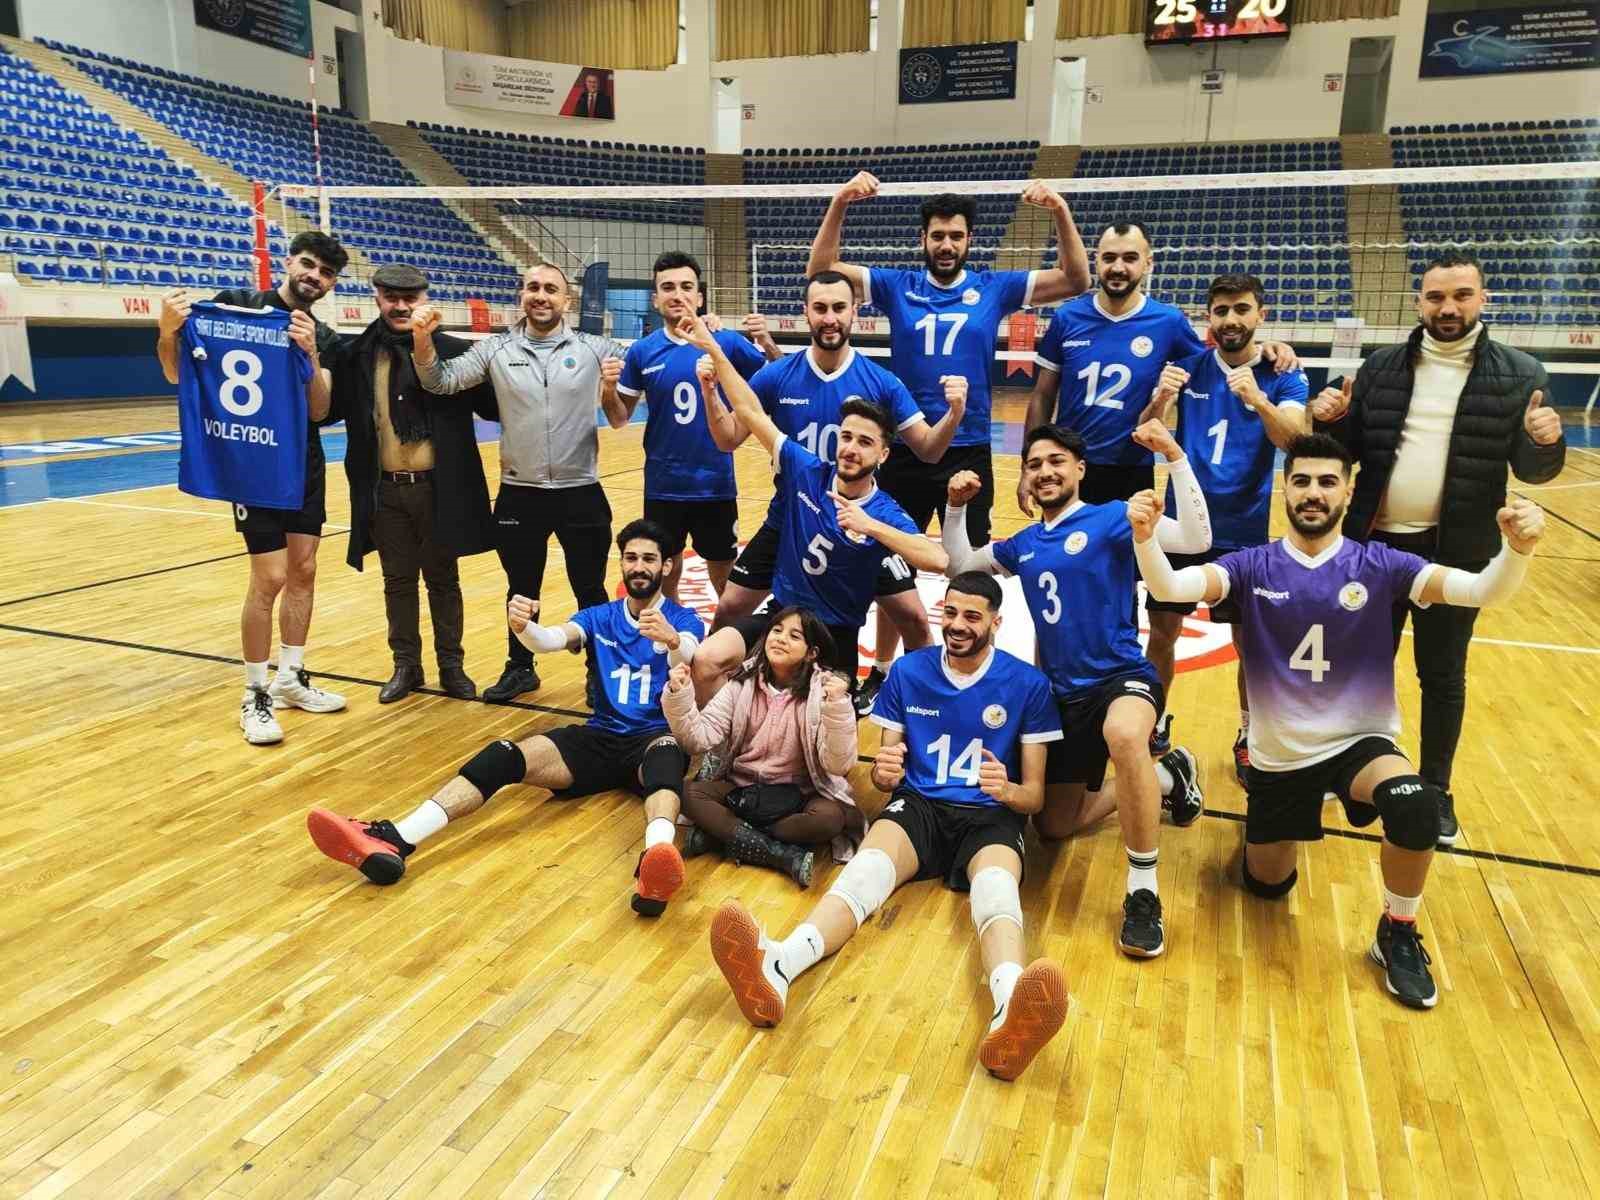 Siirt Belediyesi Erkek Voleybol Takımı play-off oynamaya hak kazandı
